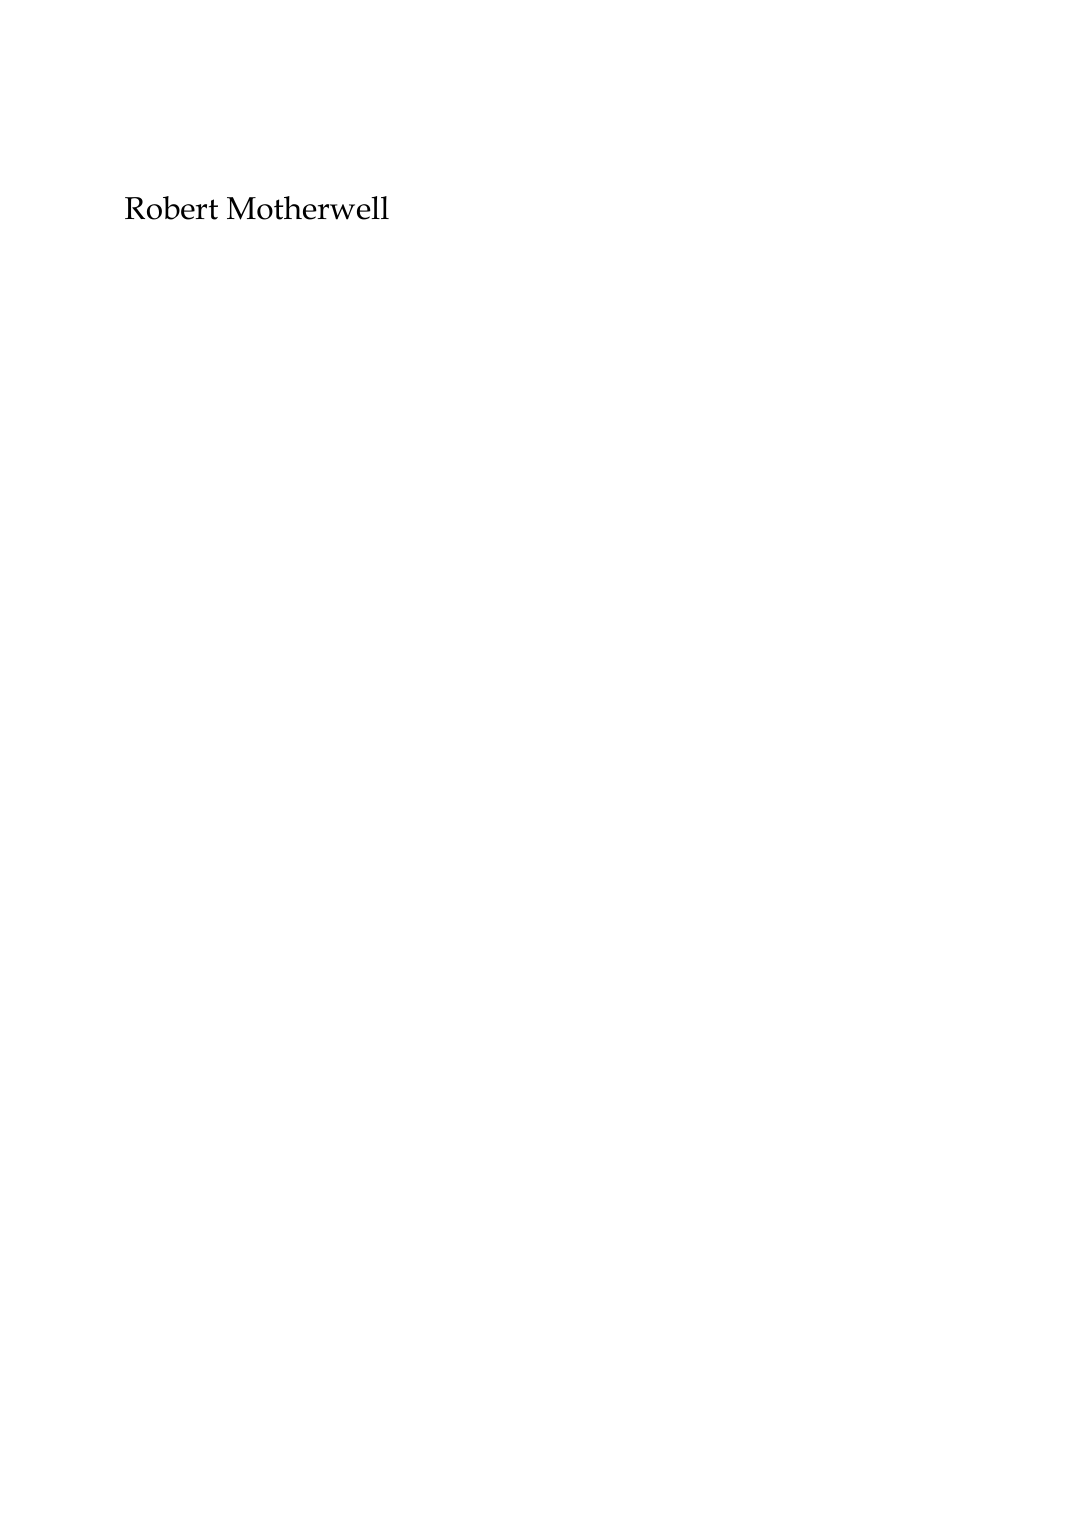 Prévisualisation du document Robert Motherwell par Daniel RobbinsAssistant Curator, The Solomon Guggenheim Museum, New York Robert Motherwell est incontestablement américain et il a étéprofondément attaché aux tendances fondamentales de la peintureaméricaine depuis le début de la Seconde Guerre mondiale.